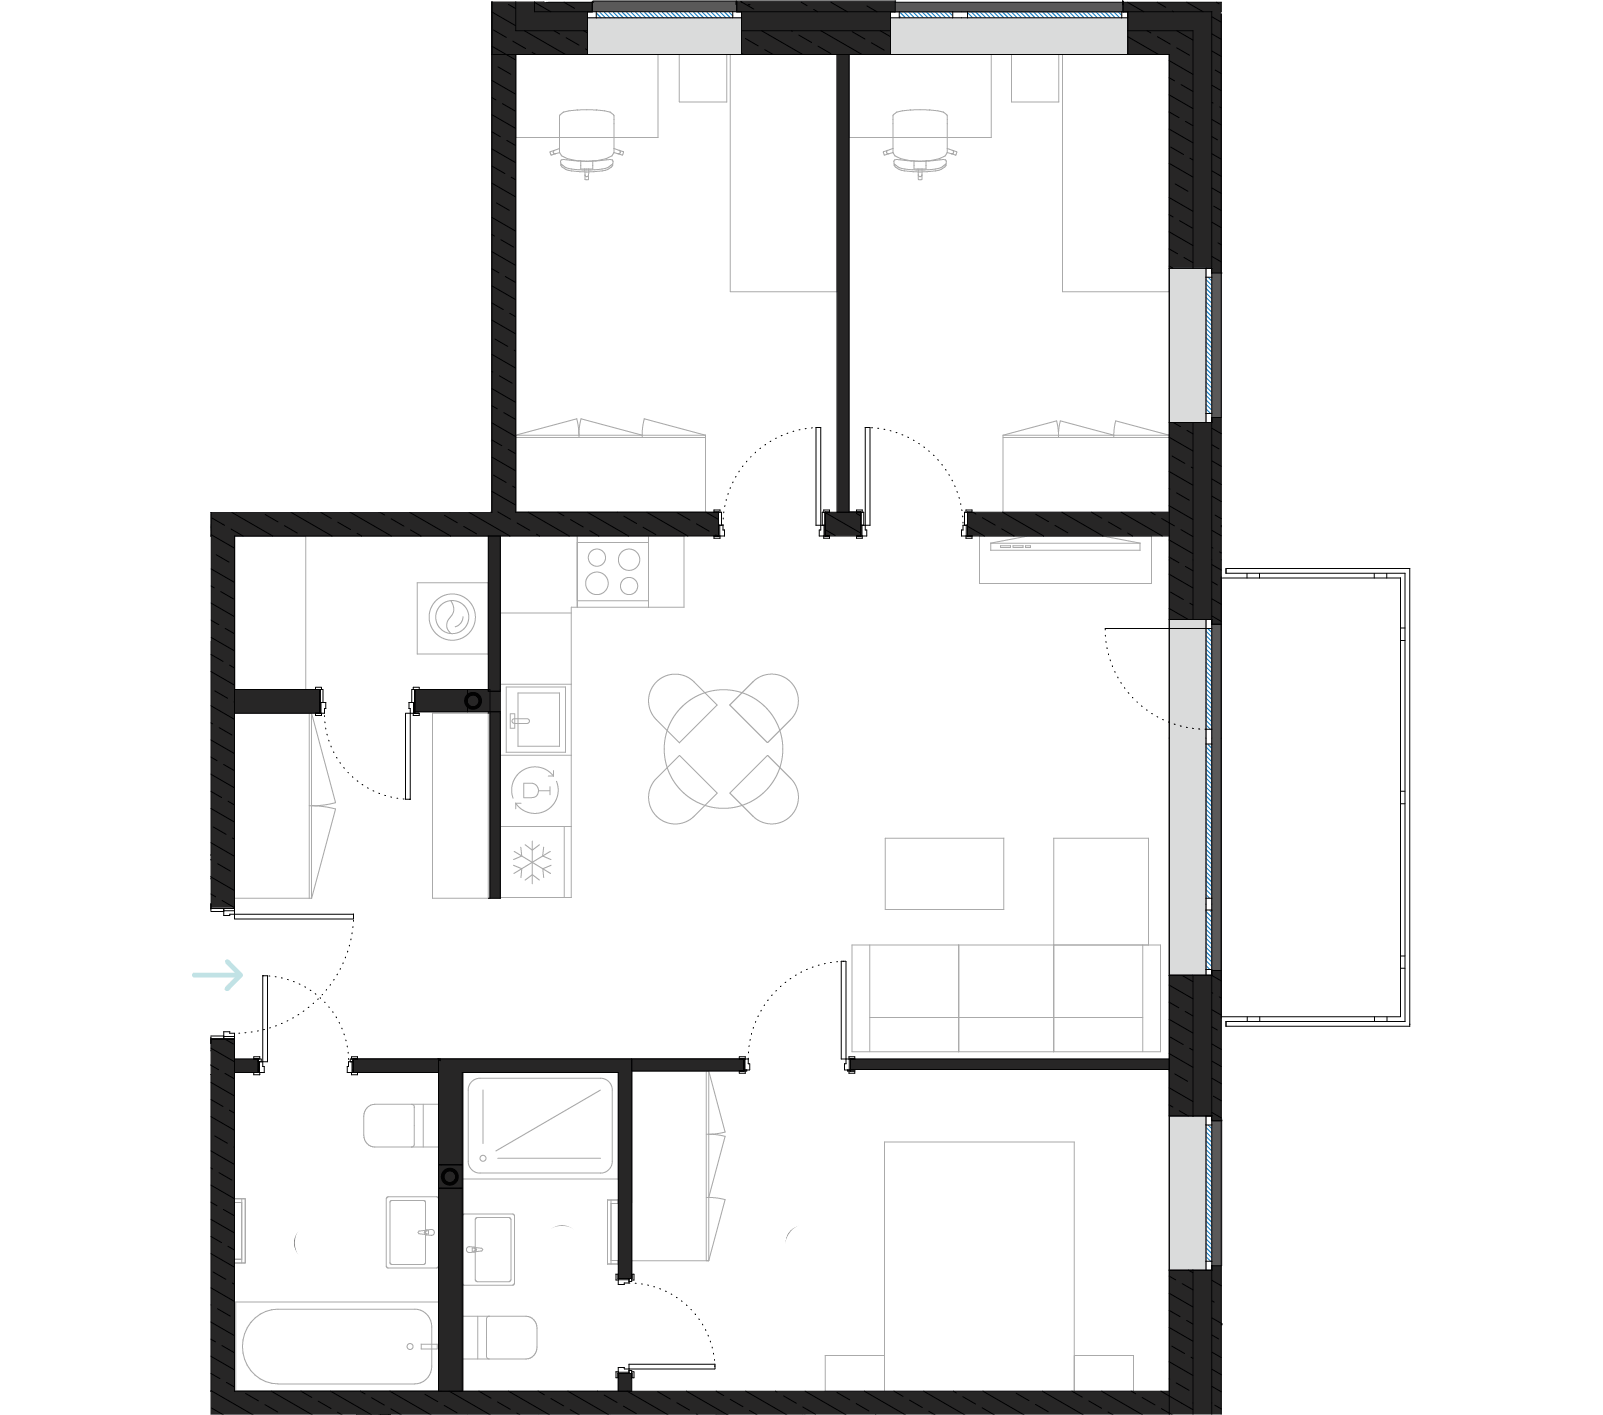 4B floorplan